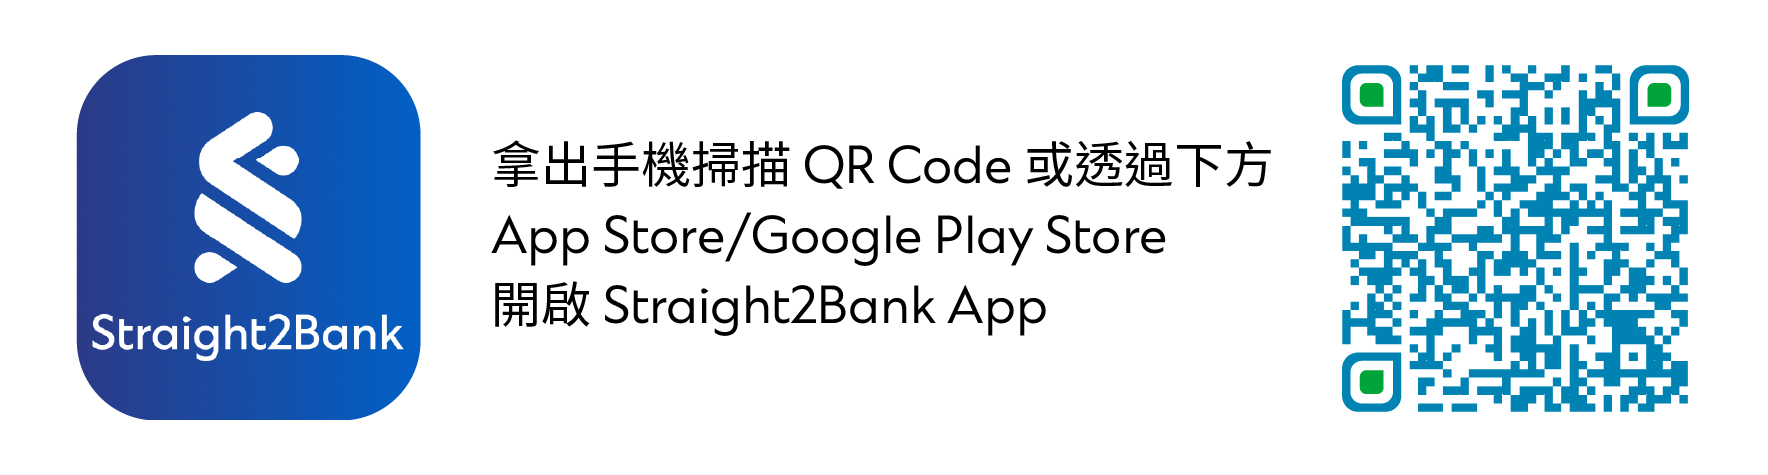 Text, QR Code, Logo